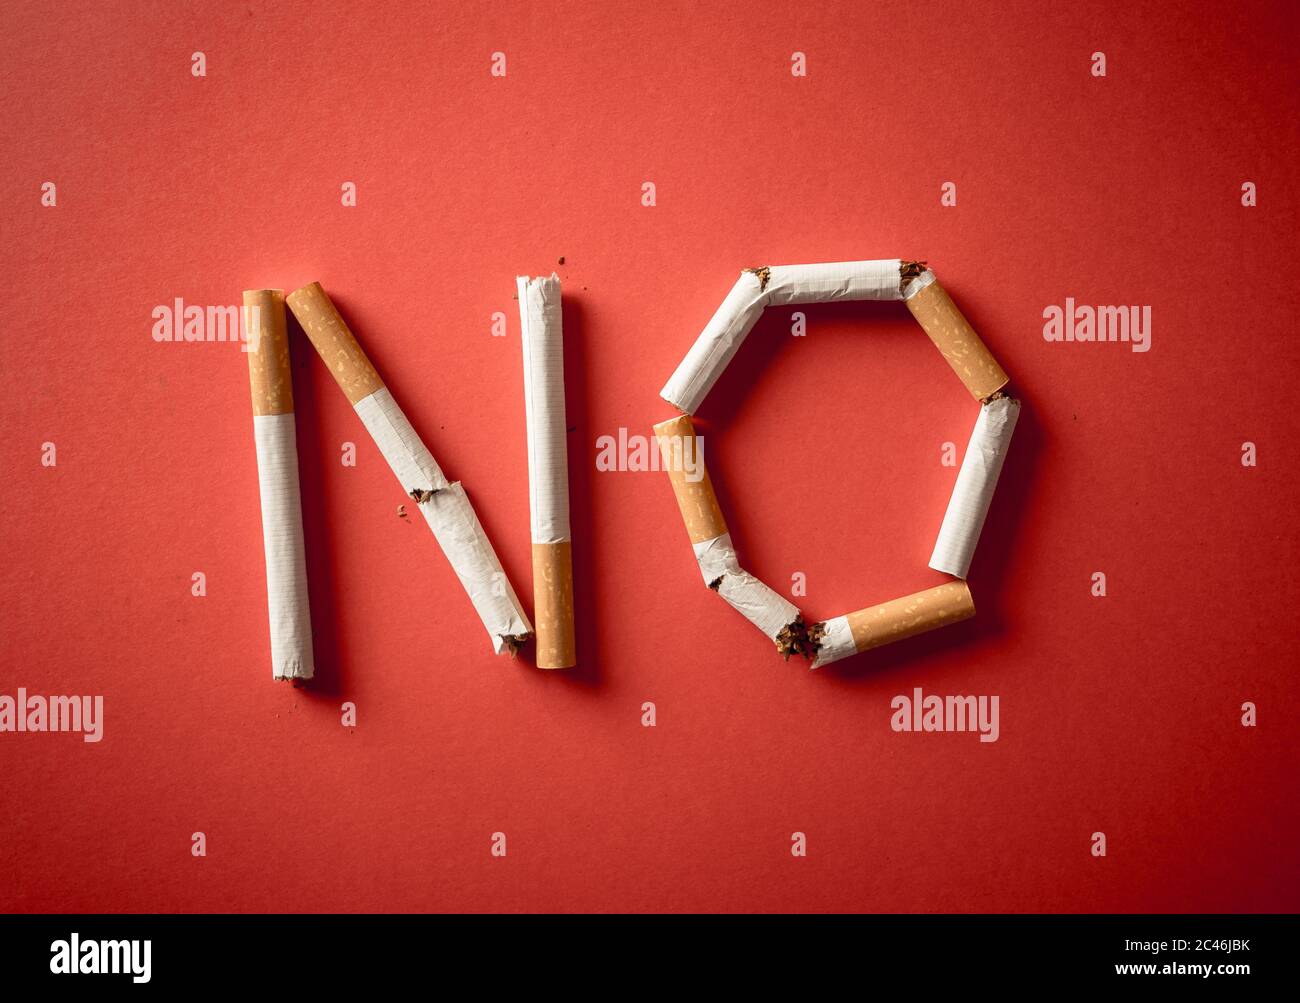 KEINE mit gebrochenen Zigaretten isoliert auf rotem Hintergrund geschrieben. Konzeptionelles Image mit Werbestil für Welt kein Tabak Tag und aufhören zu rauchen campai Stockfoto